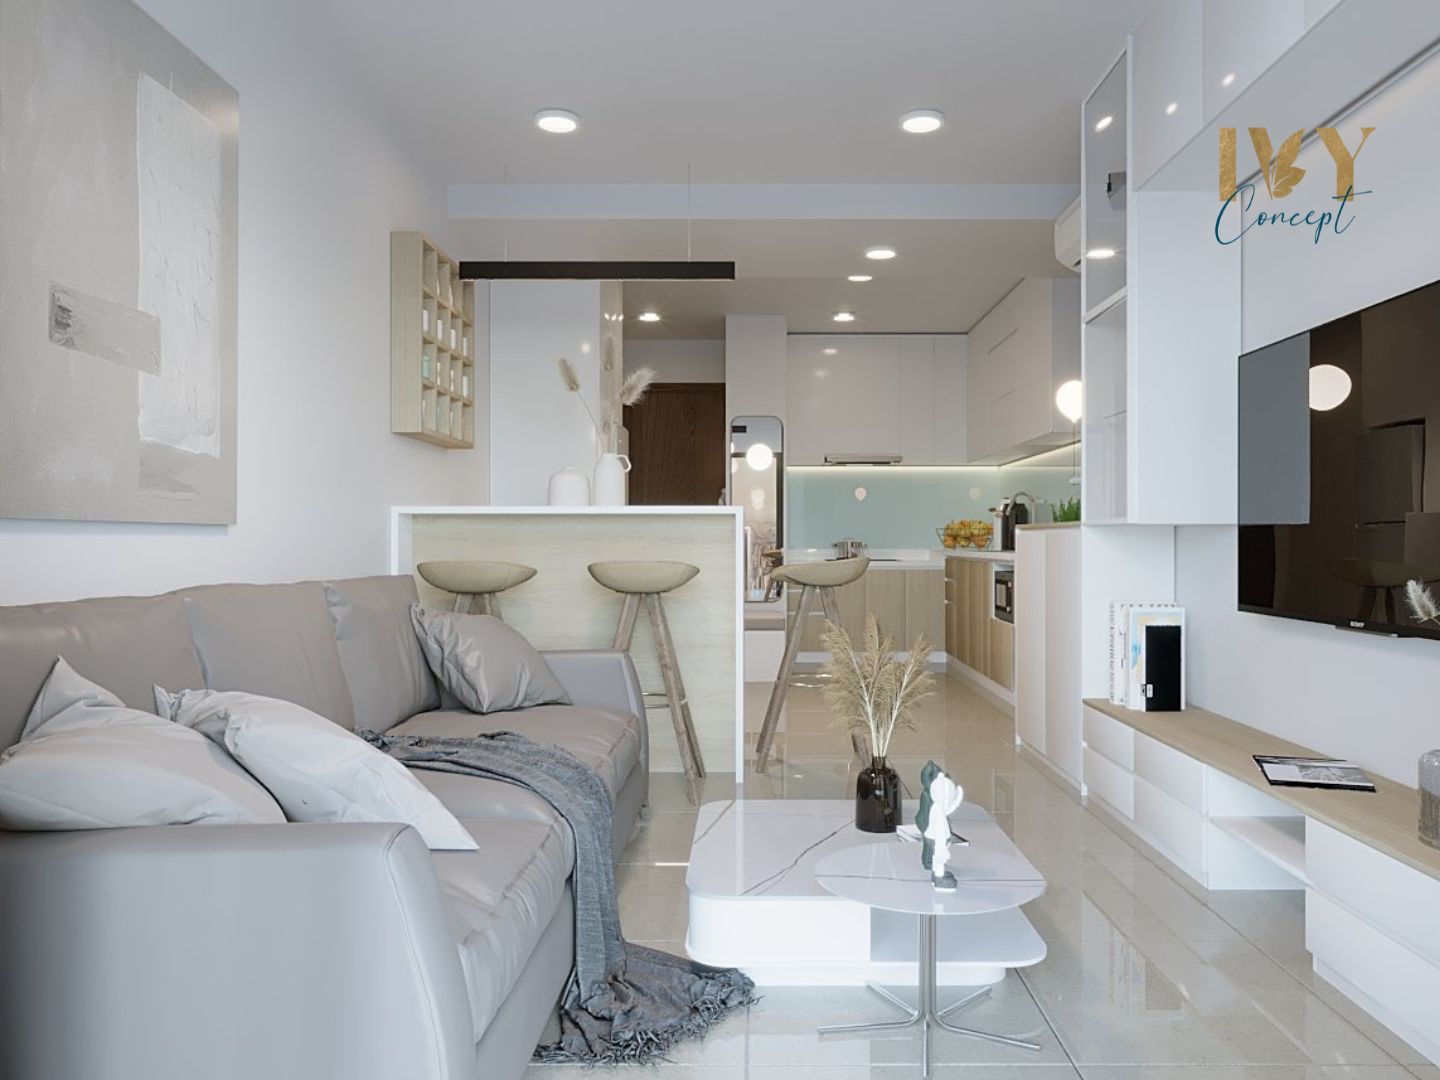 Phòng khách, phong cách Hiện đại Modern, thiết kế concept nội thất, căn hộ River Panorama